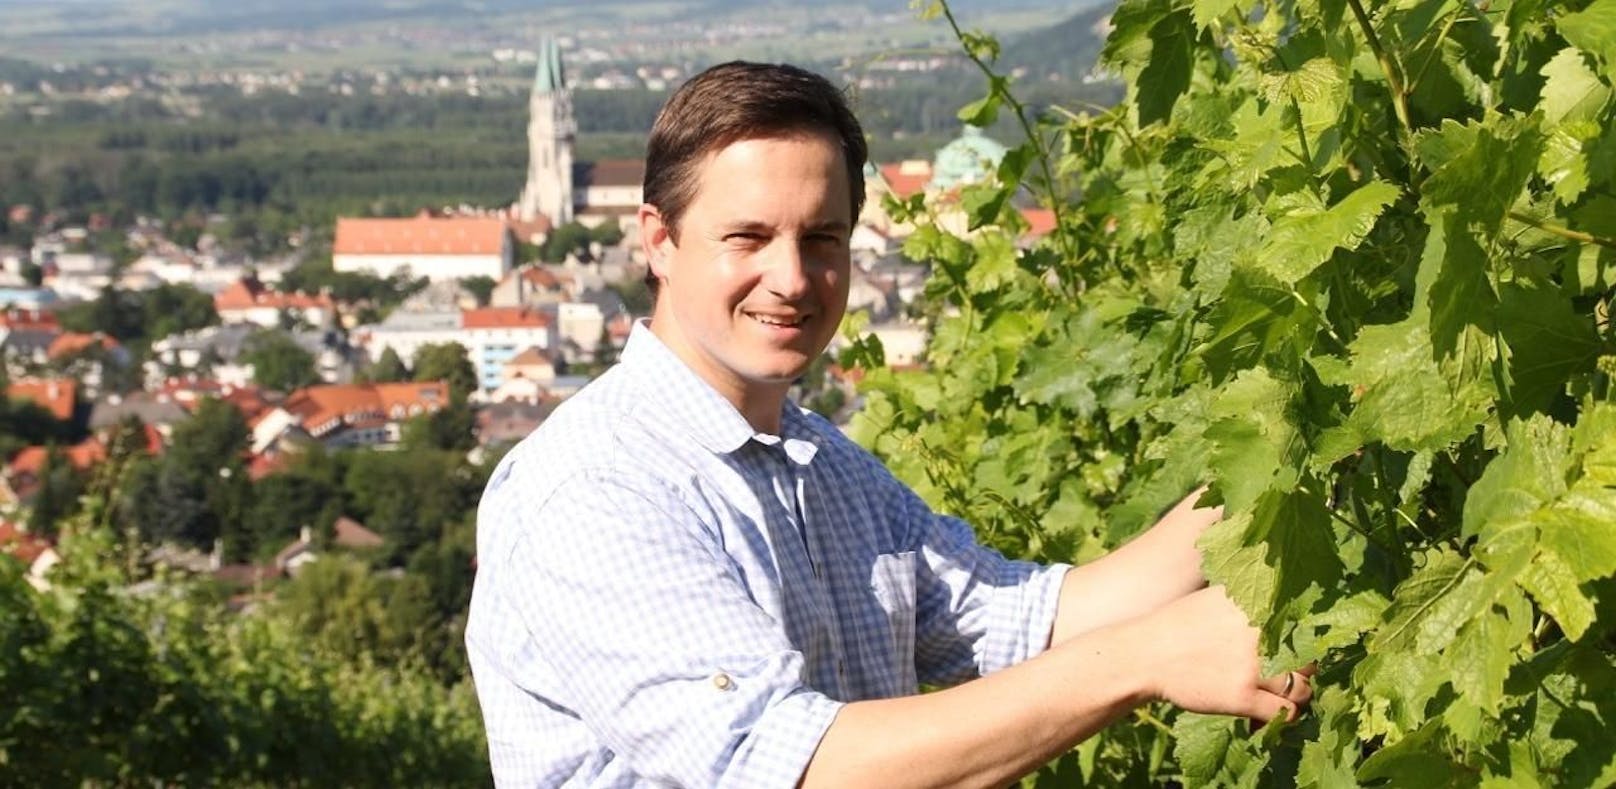 Weinbau-Chef: "Lieber beraten anstatt strafen"